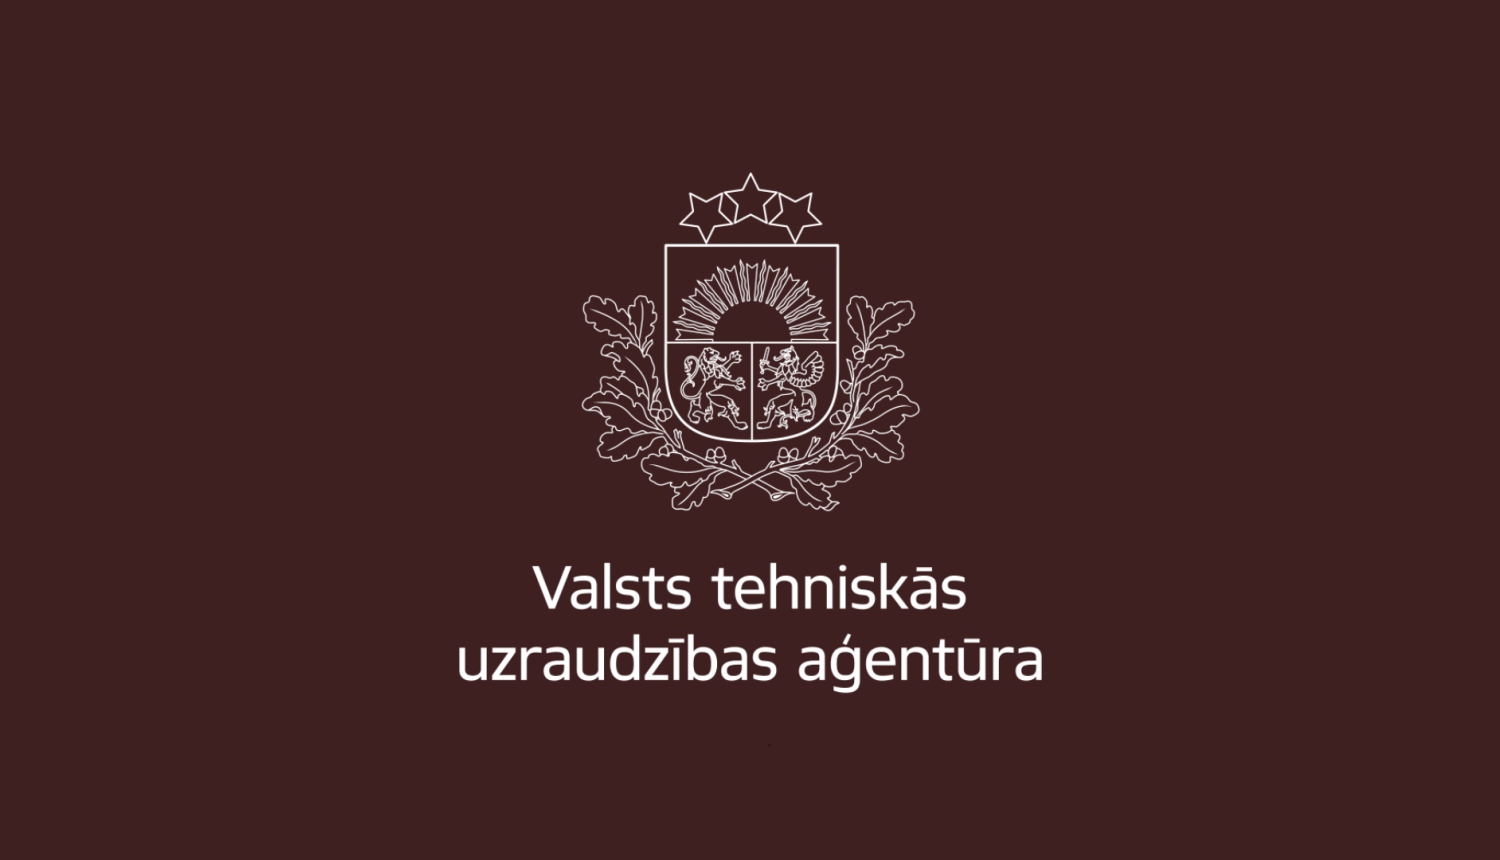 Traktoru tehniskā apskate. Valsts tehniskās uzraudzības aģentūras (VTUA) logo